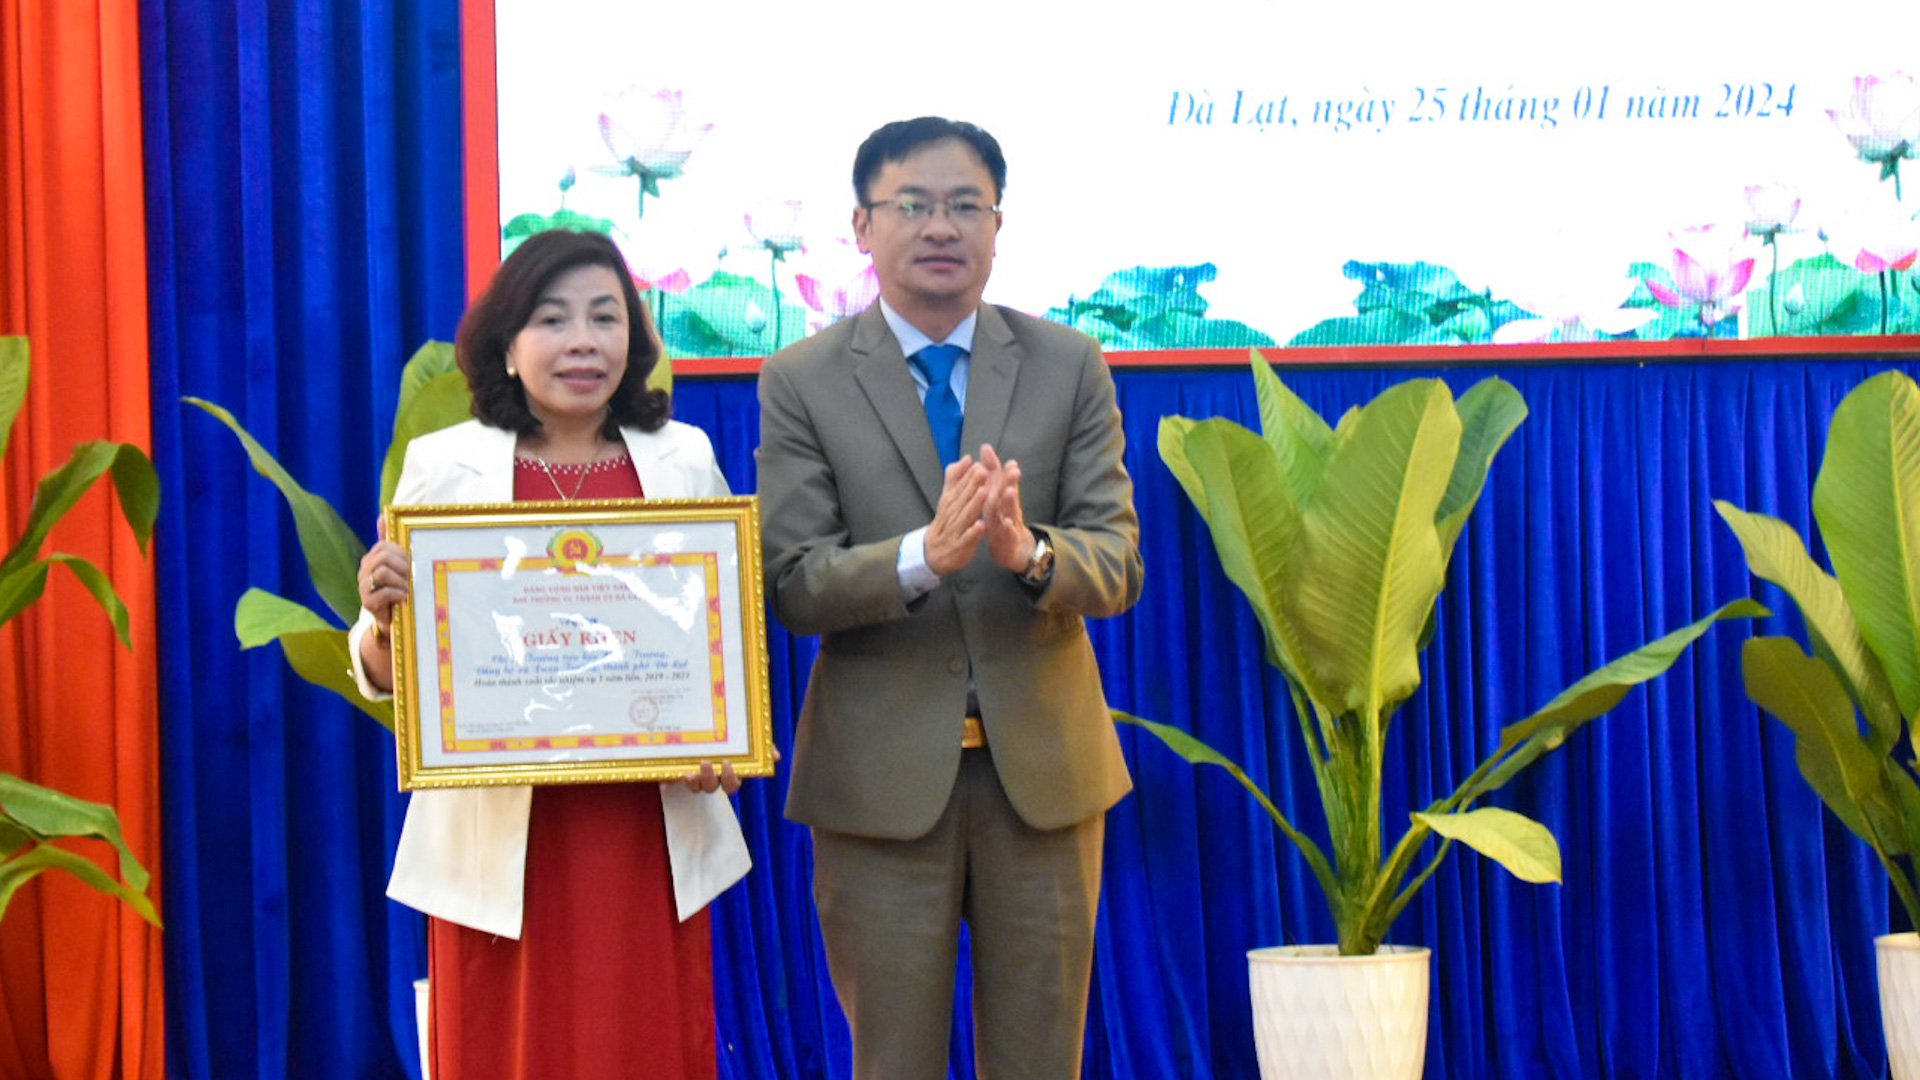 Chi bộ Trường Tiểu học Xuân Trường được Thành ủy khen thưởng vì có thành tích xuất sắc trong công tác xây dựng Đảng 5 năm liền